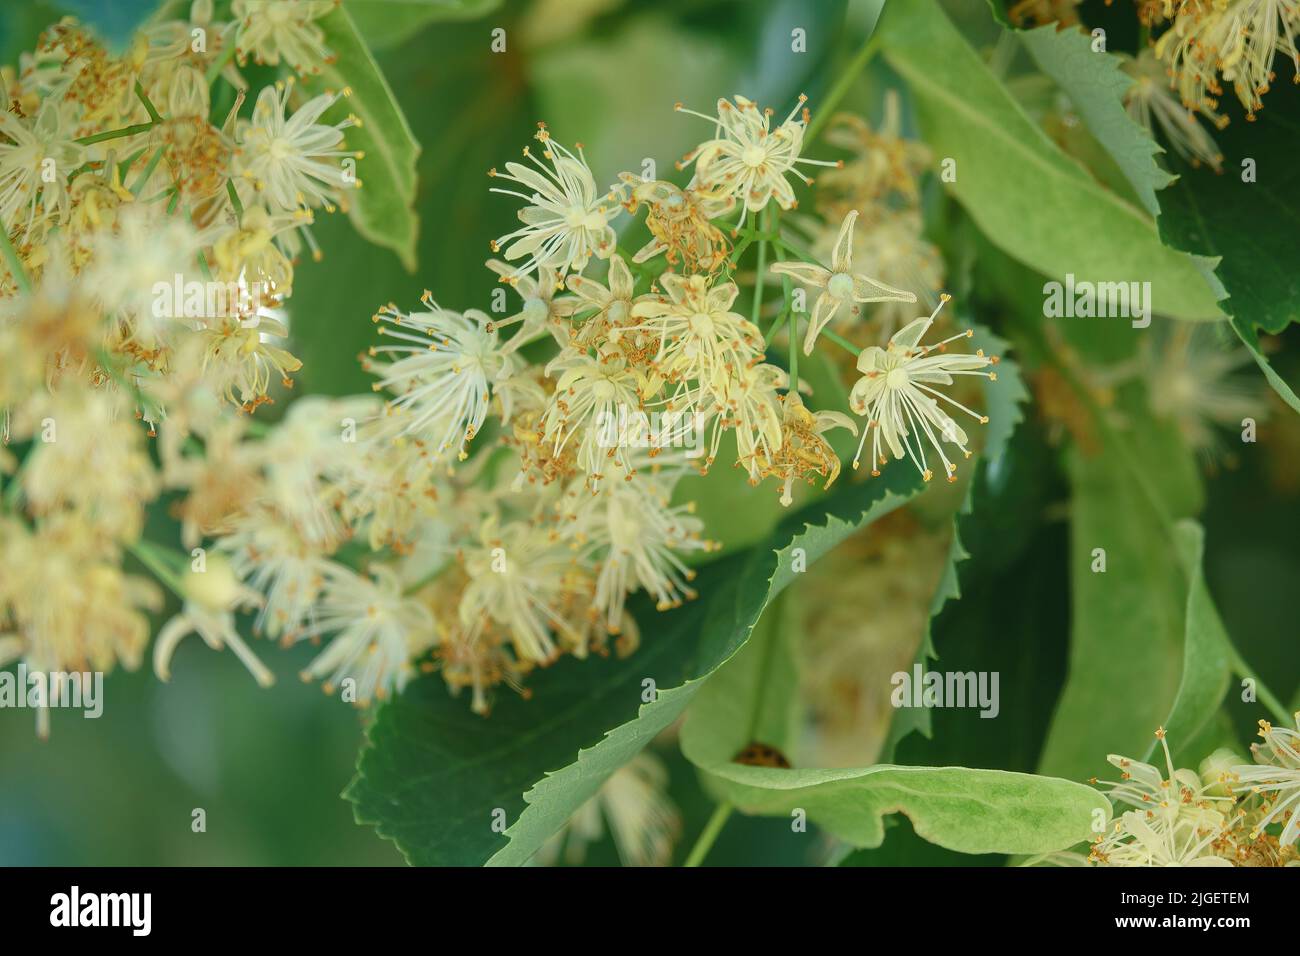 Fleurs de tilleul en fleurs. Gros plan des fleurs fleuries sur le tilleul. Ingrédient naturel pour le thé, le miel et la médecine Banque D'Images